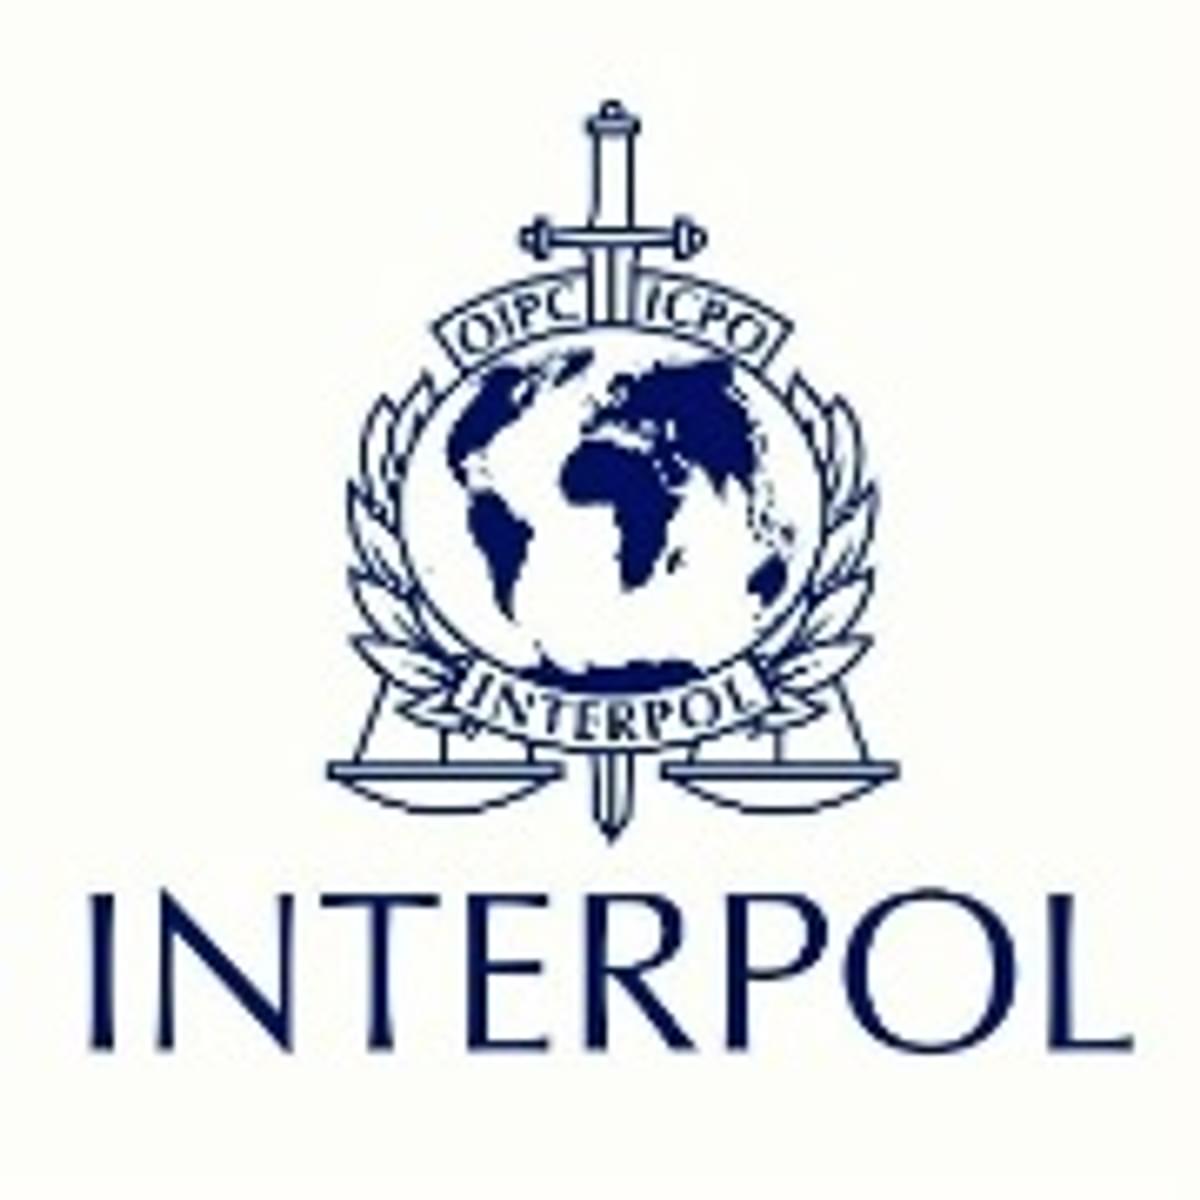 Interpol plaatst voormalig Wirecard COO Jan Marsalek op most wanted-lijst image